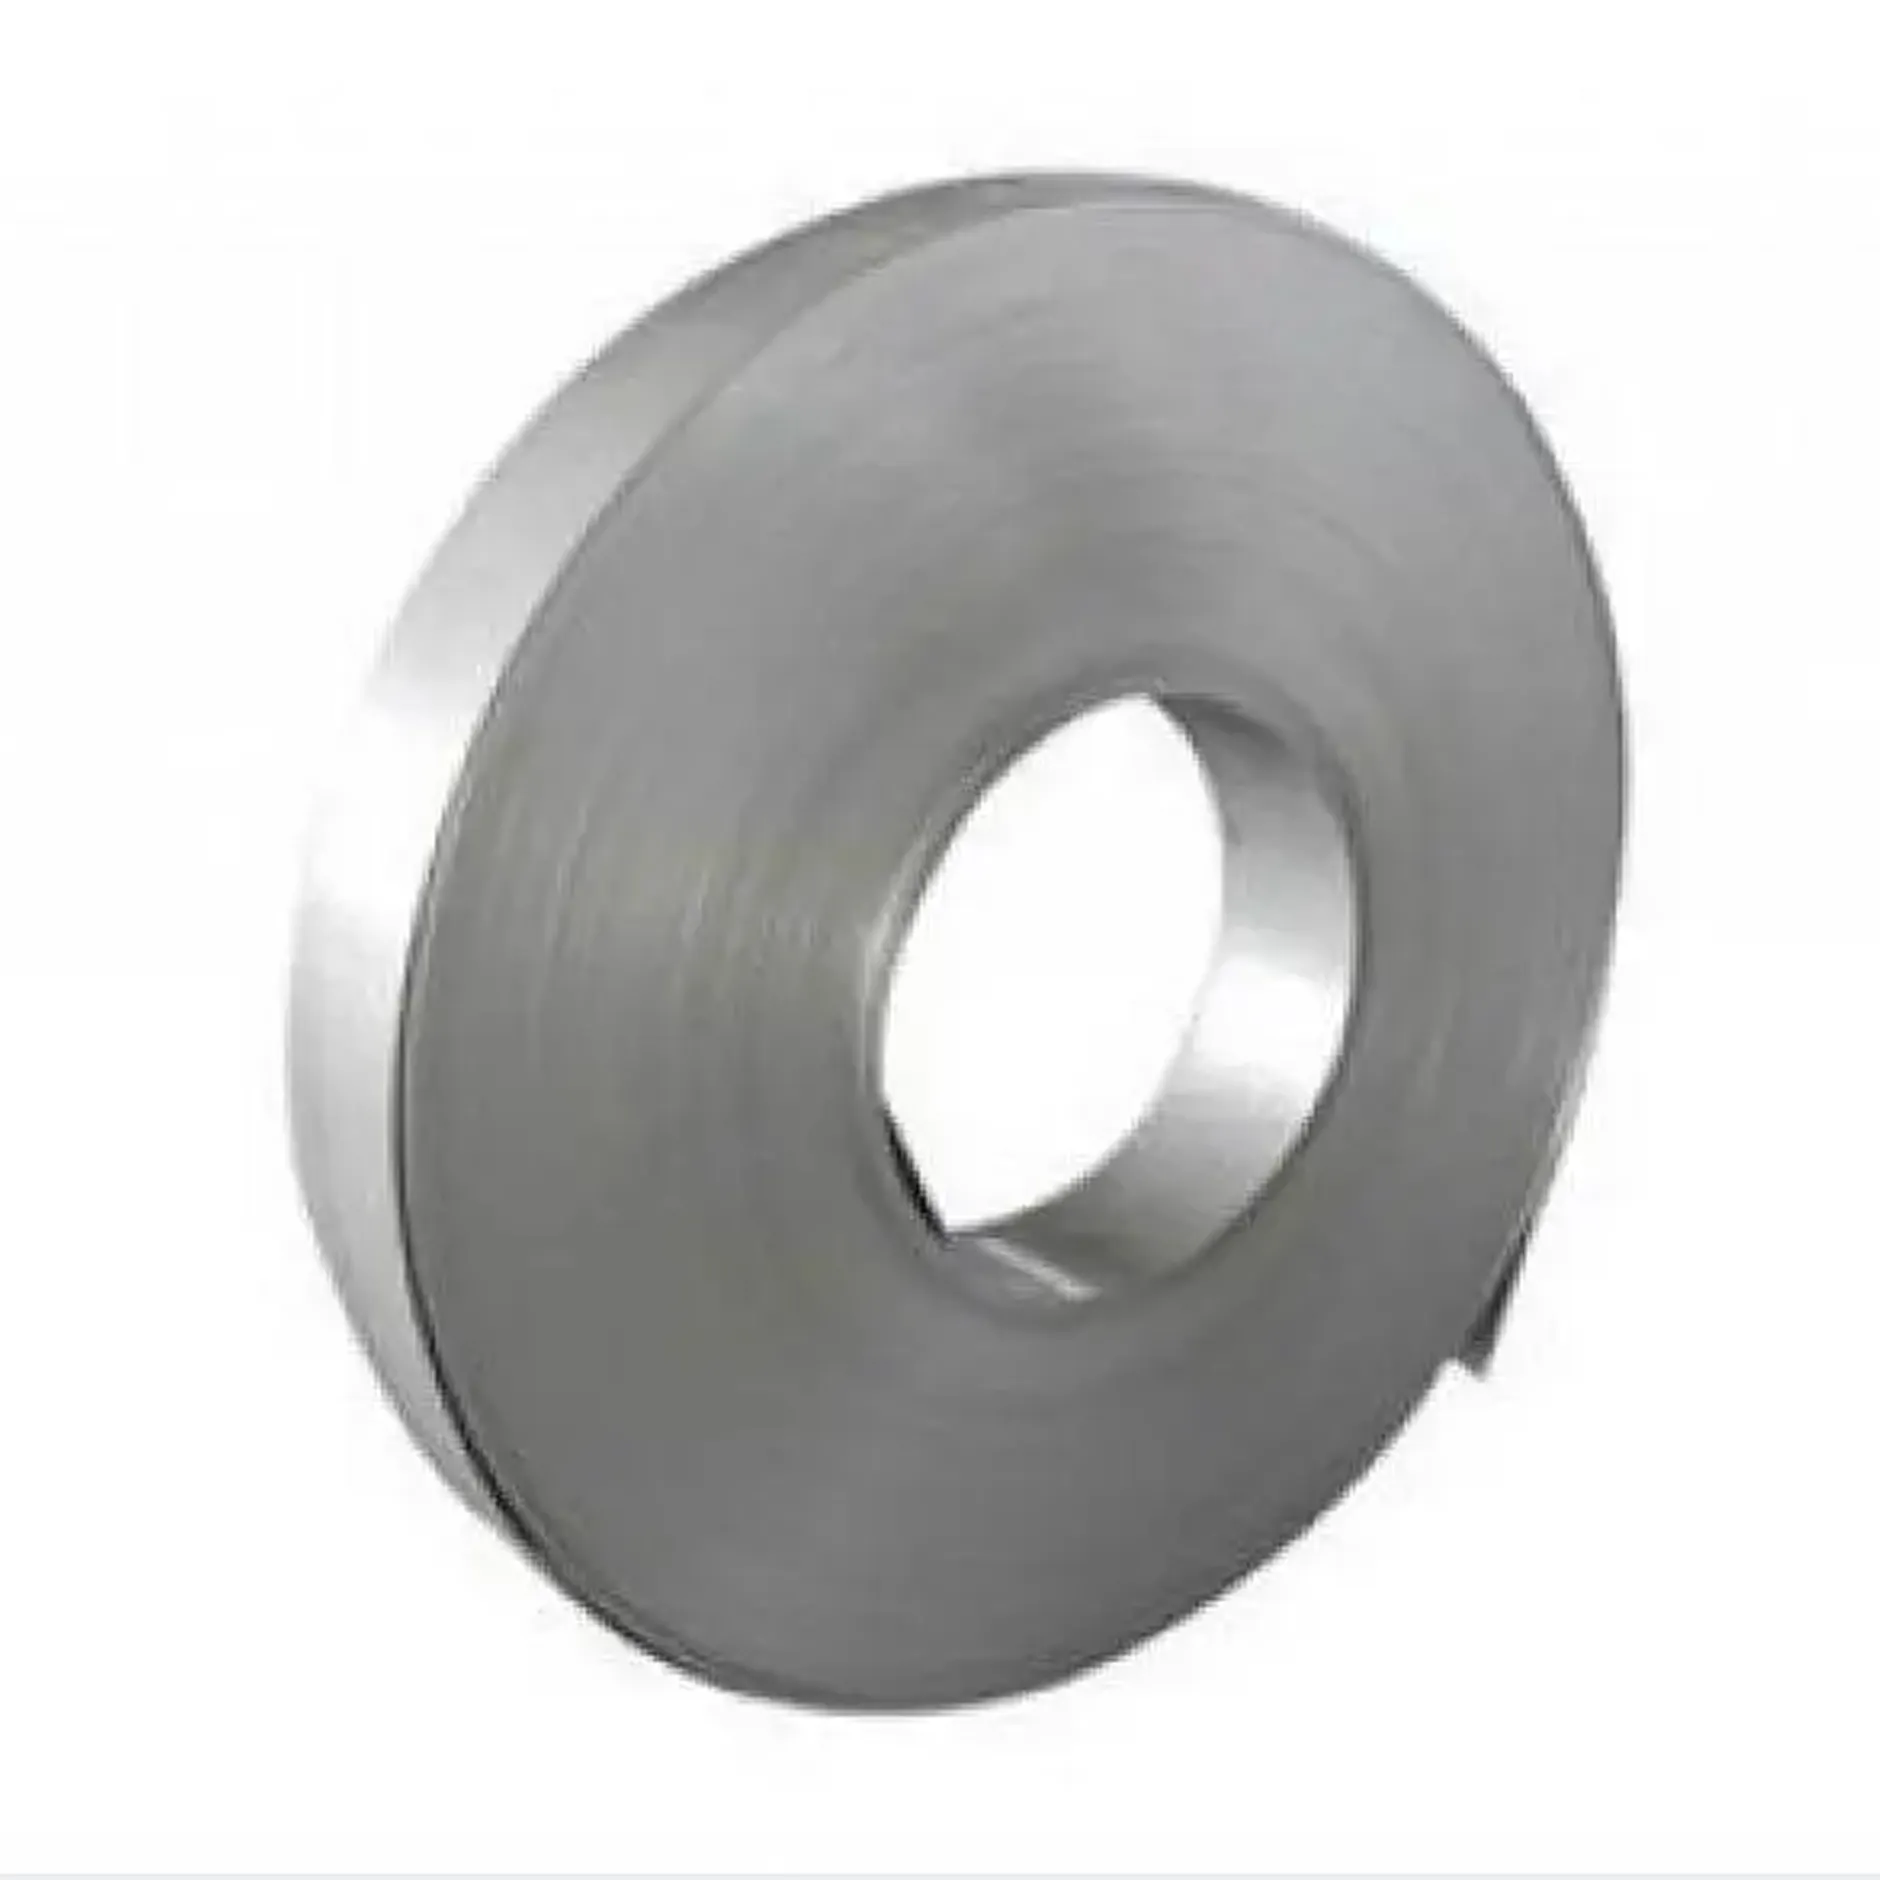 Yüksek kalite düşük fiyat paslanmaz çelik şerit paslanmaz çelik şerit minimum kalınlık 0.05mm, endonezya'dan özelleştirilmiş genişlik